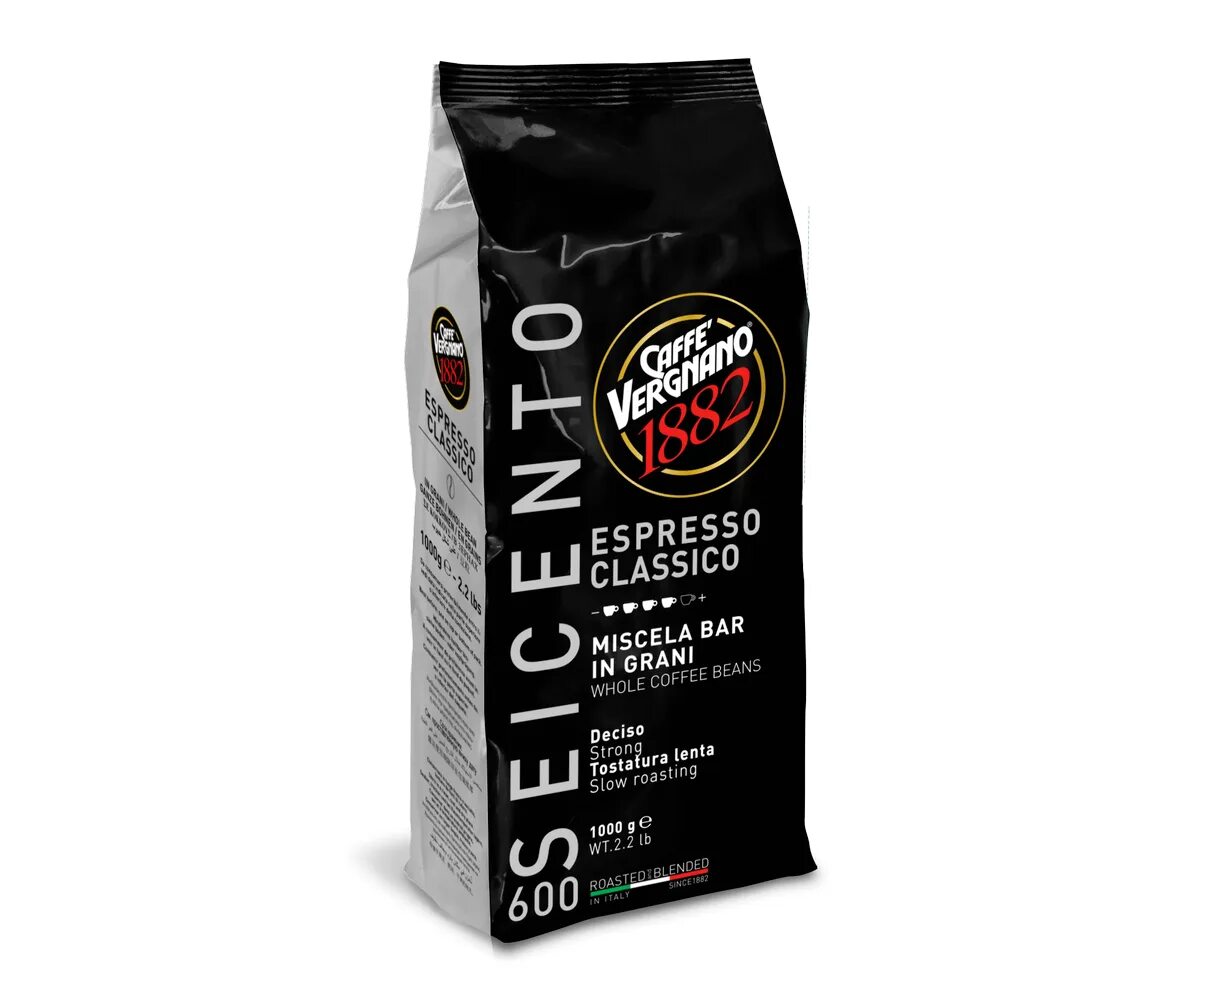 Какие марки кофе крепкие. Кофе в зернах Вернано 600. Vergnano Espresso в зернах 1000г. Кофе Espresso Классико зерно 1000г. Caffe Vergnano 1882 молотый.